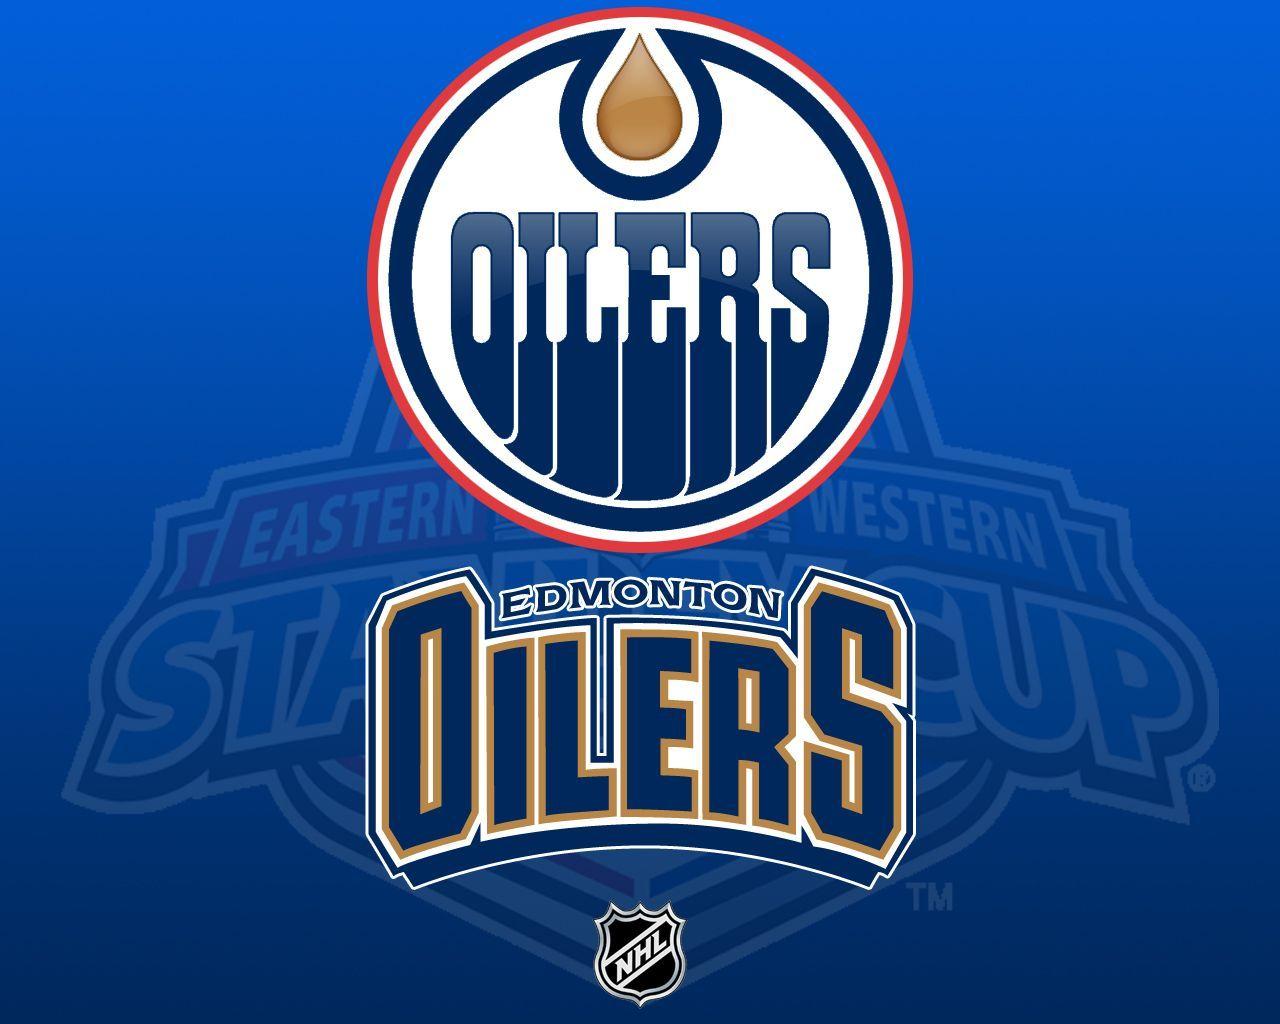 Edmonton Oilers Wallpapers 1280x1024